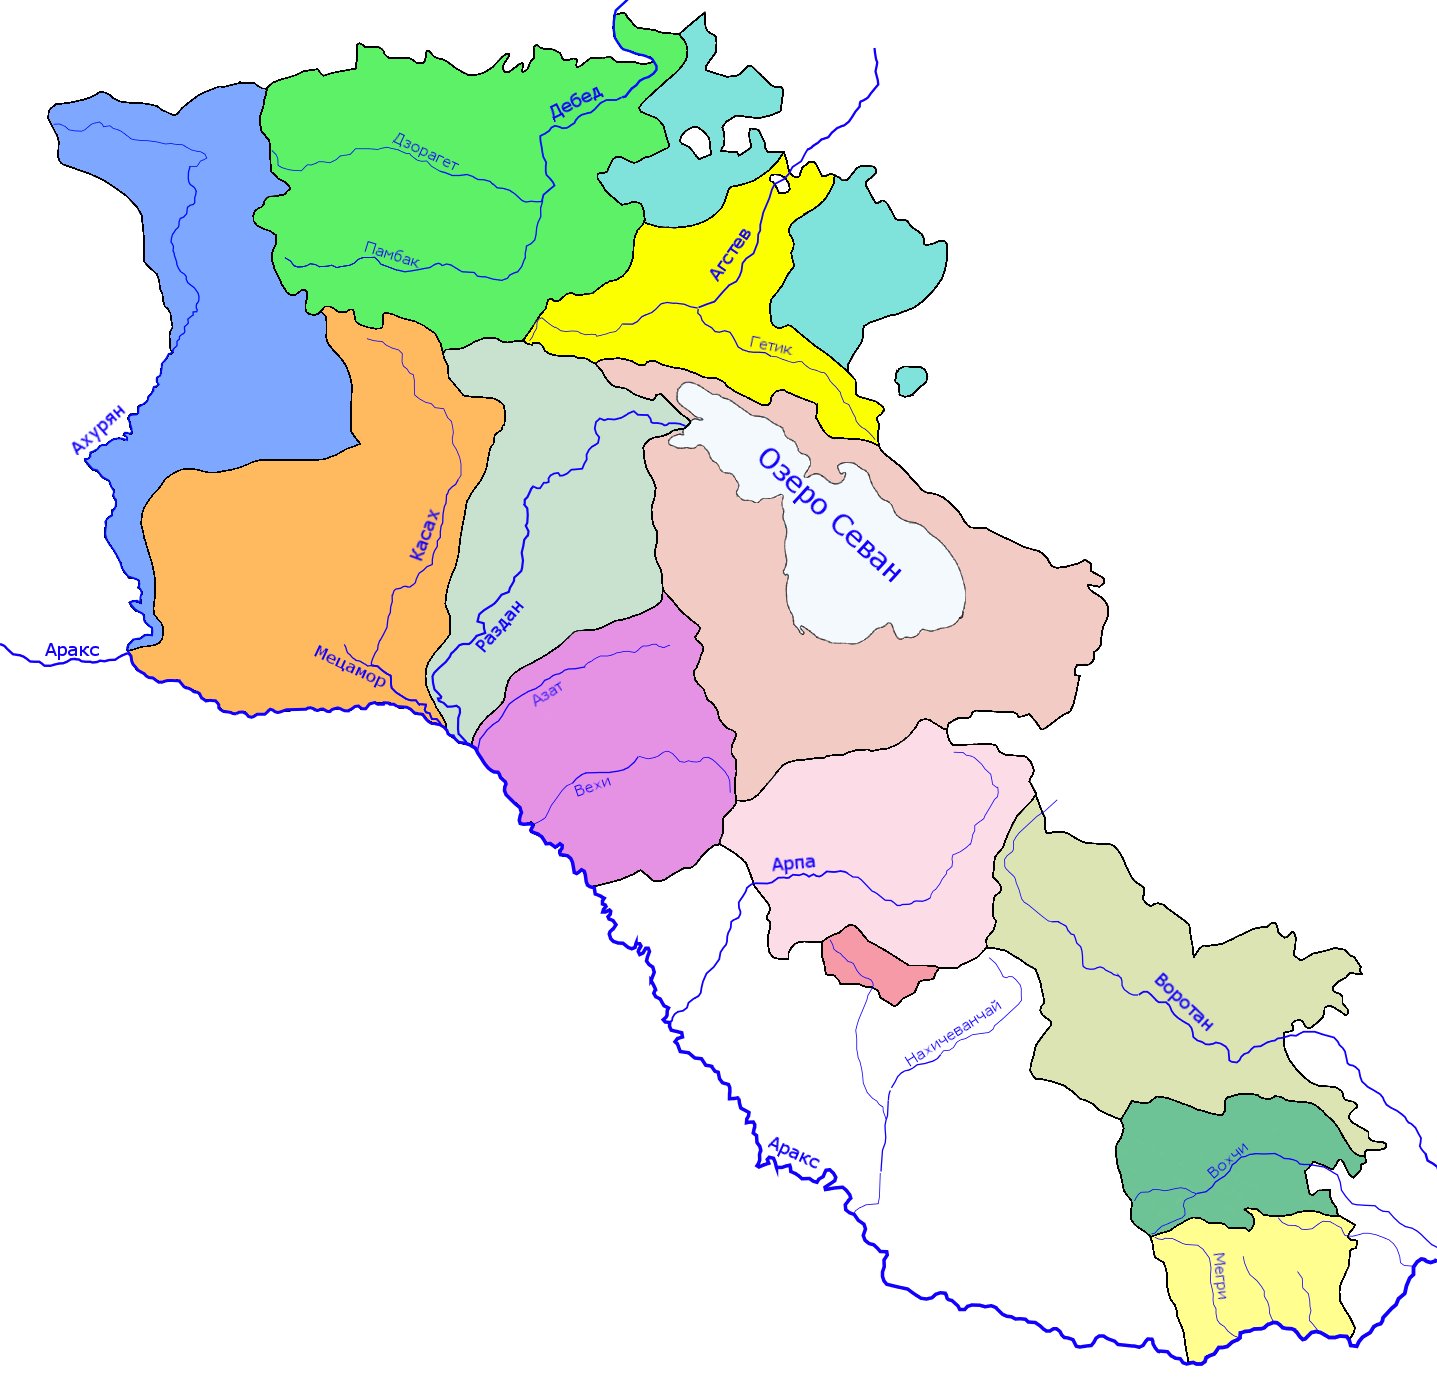 армения википедия